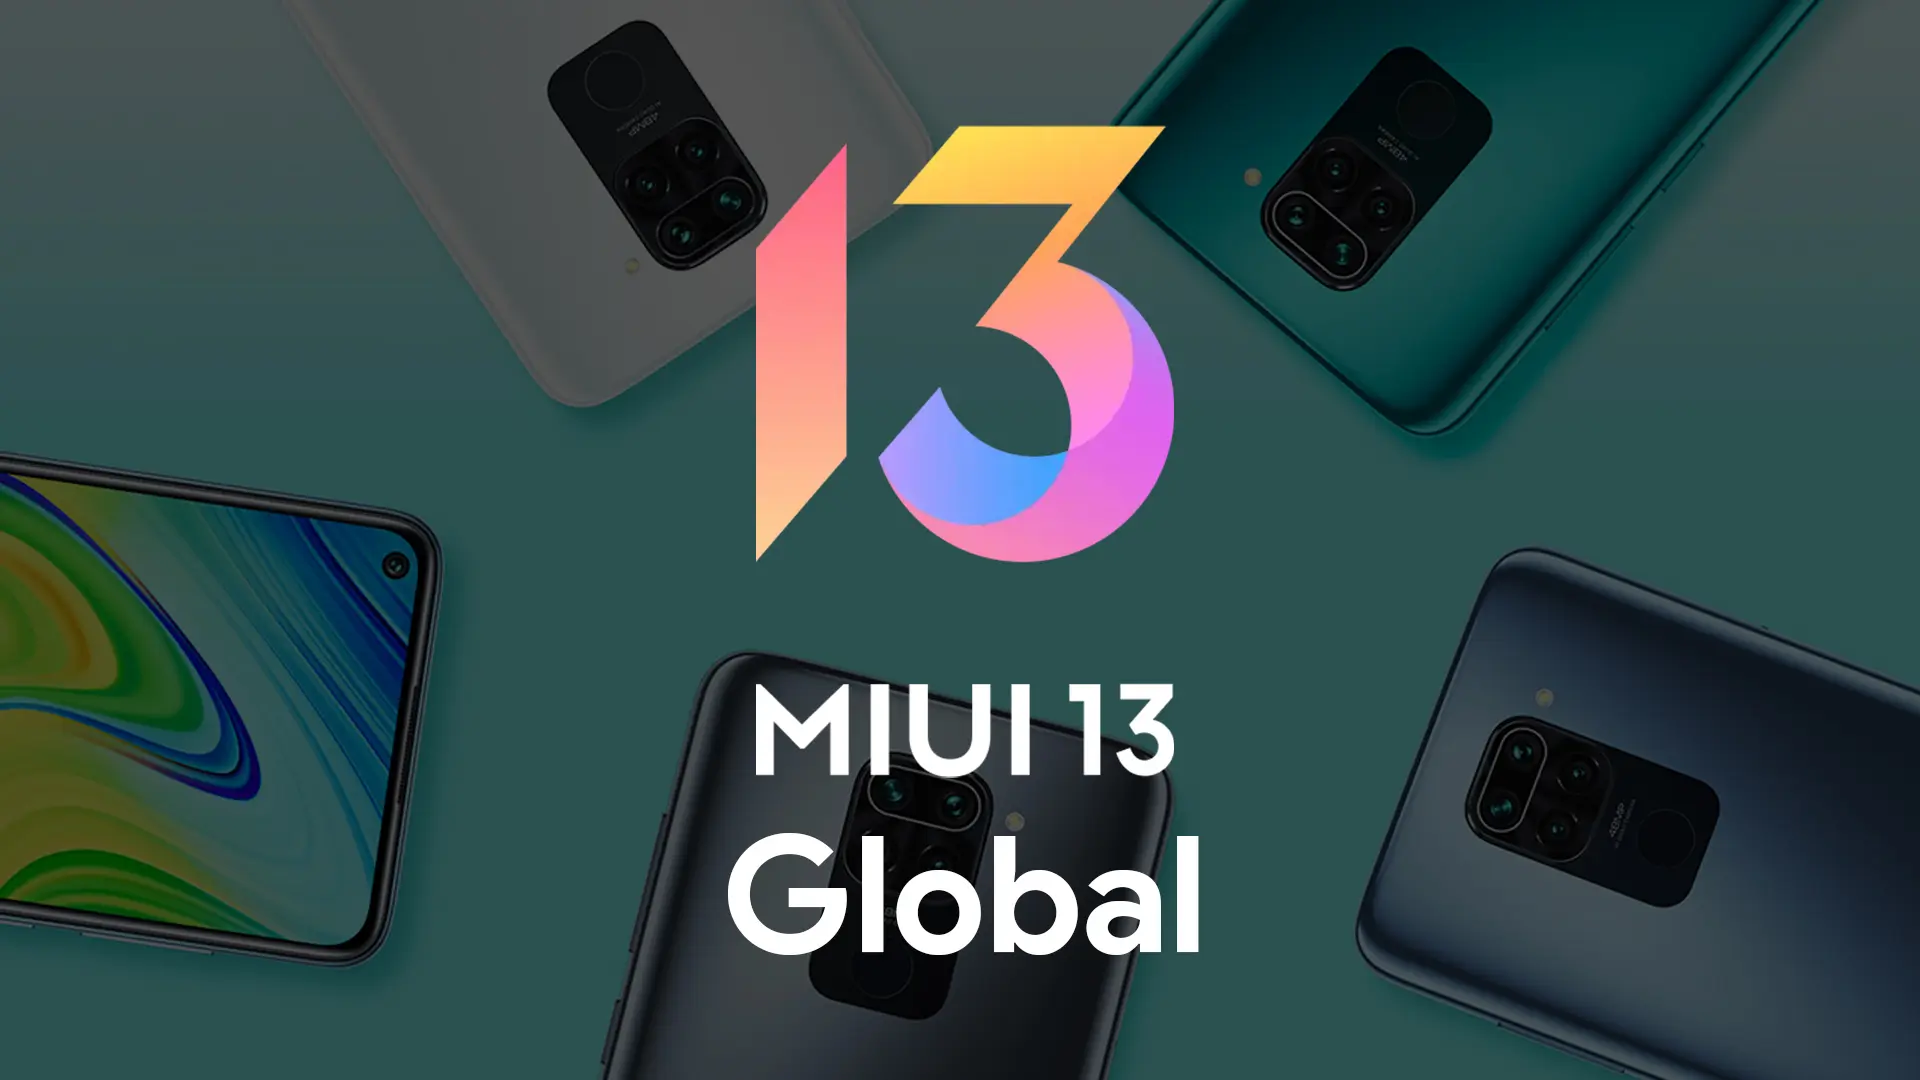 Trzy kolejne budżetowe smartfony Xiaomi otrzymały globalne oprogramowanie MIUI 13 na Androida 12